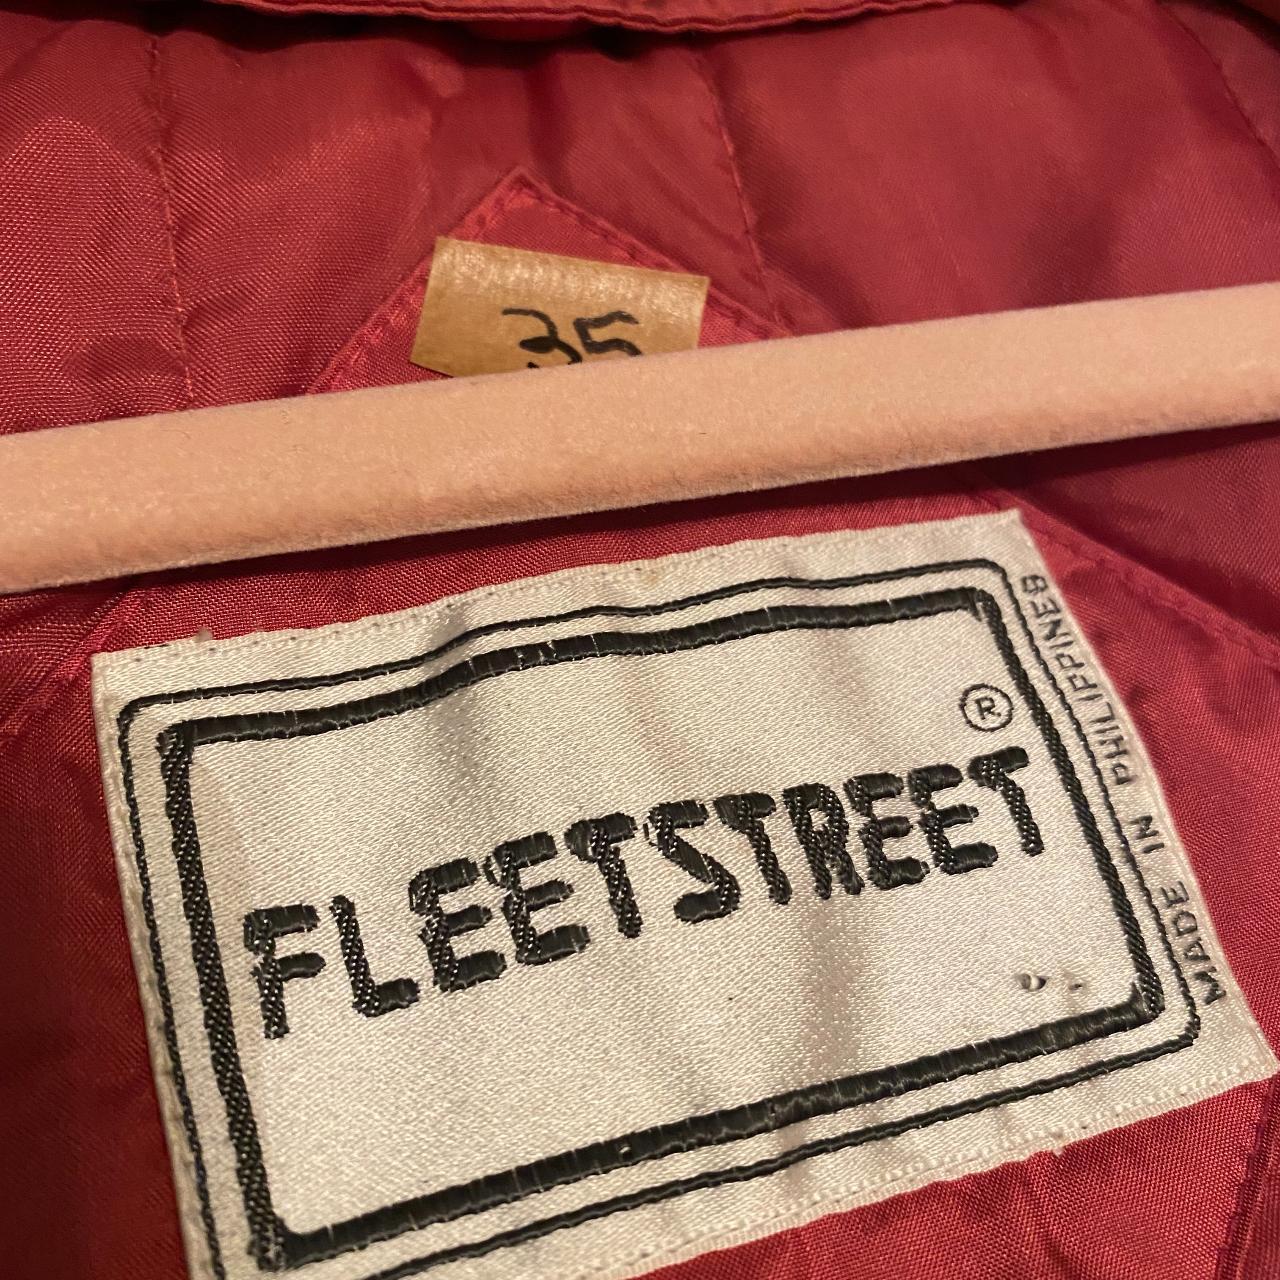 Fleet Street Metallic Pink Trench Coat. Insulated... - Depop